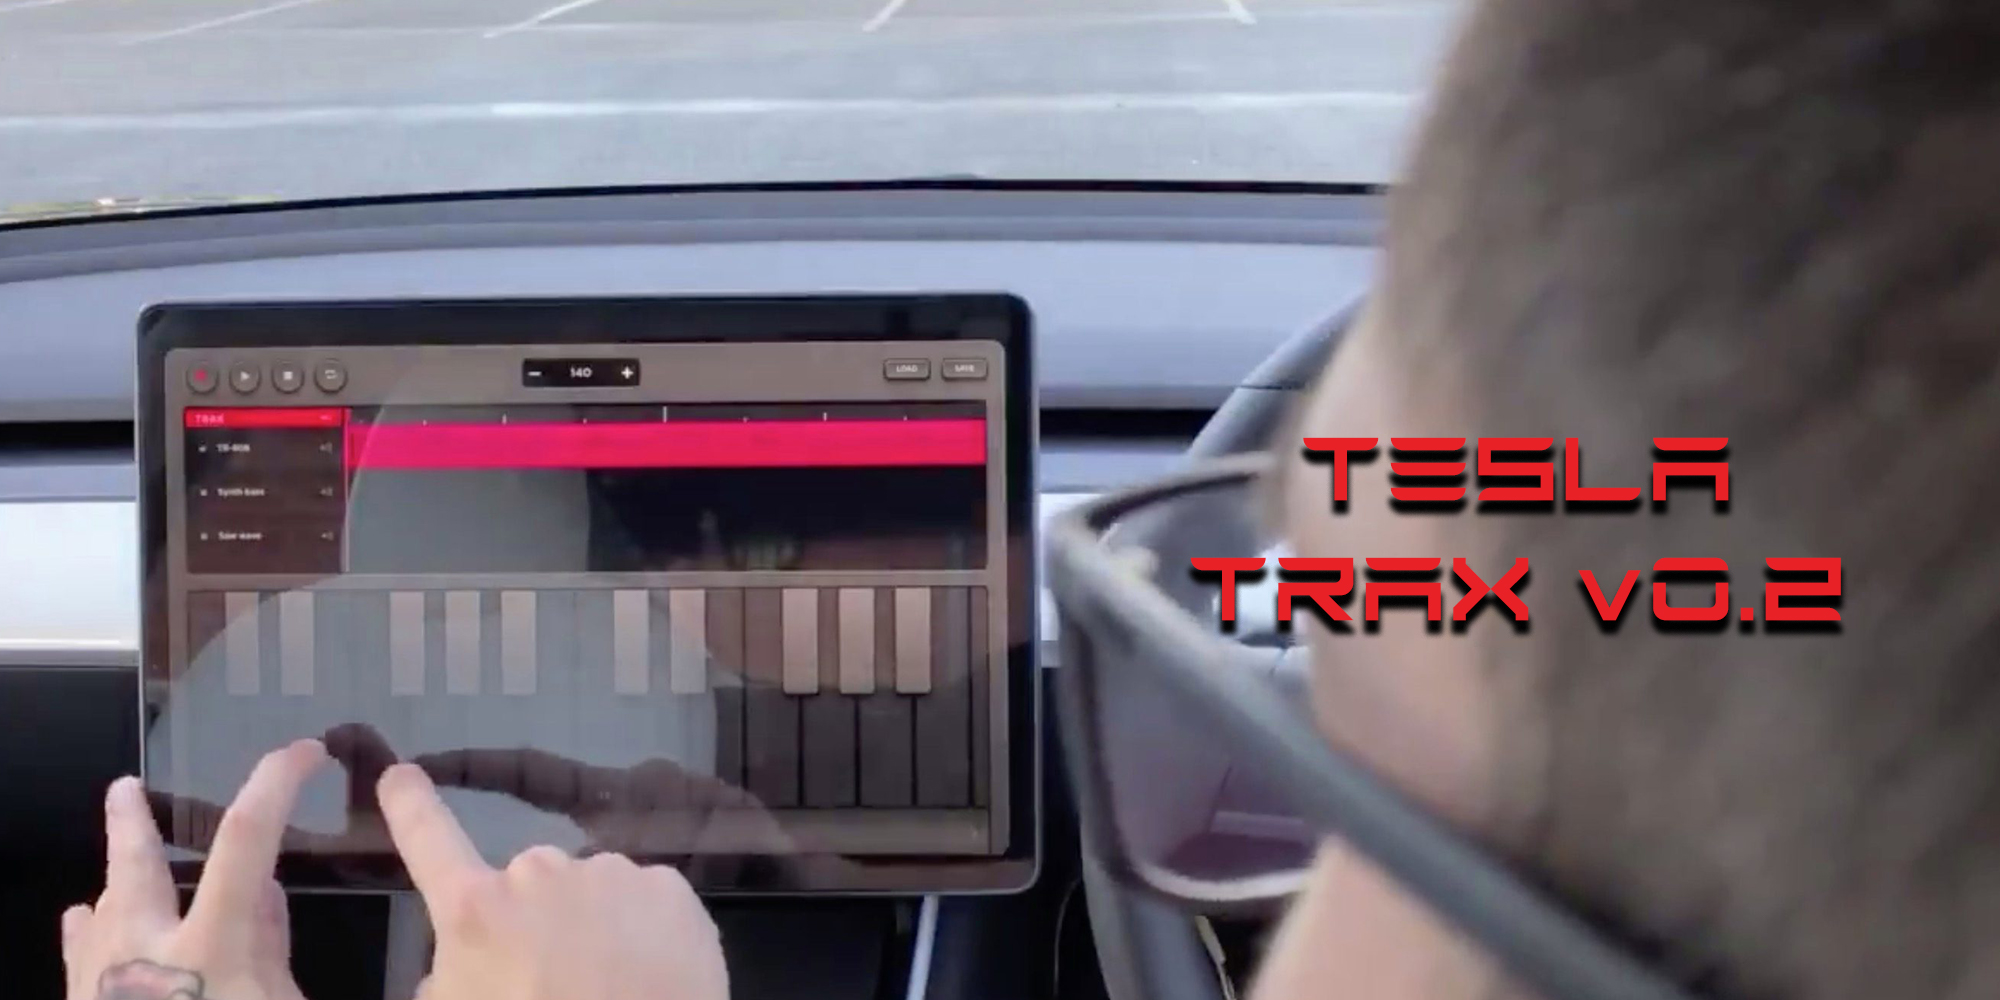  Tesla Trax Примечания к выпуску Tesla 2020.48.35